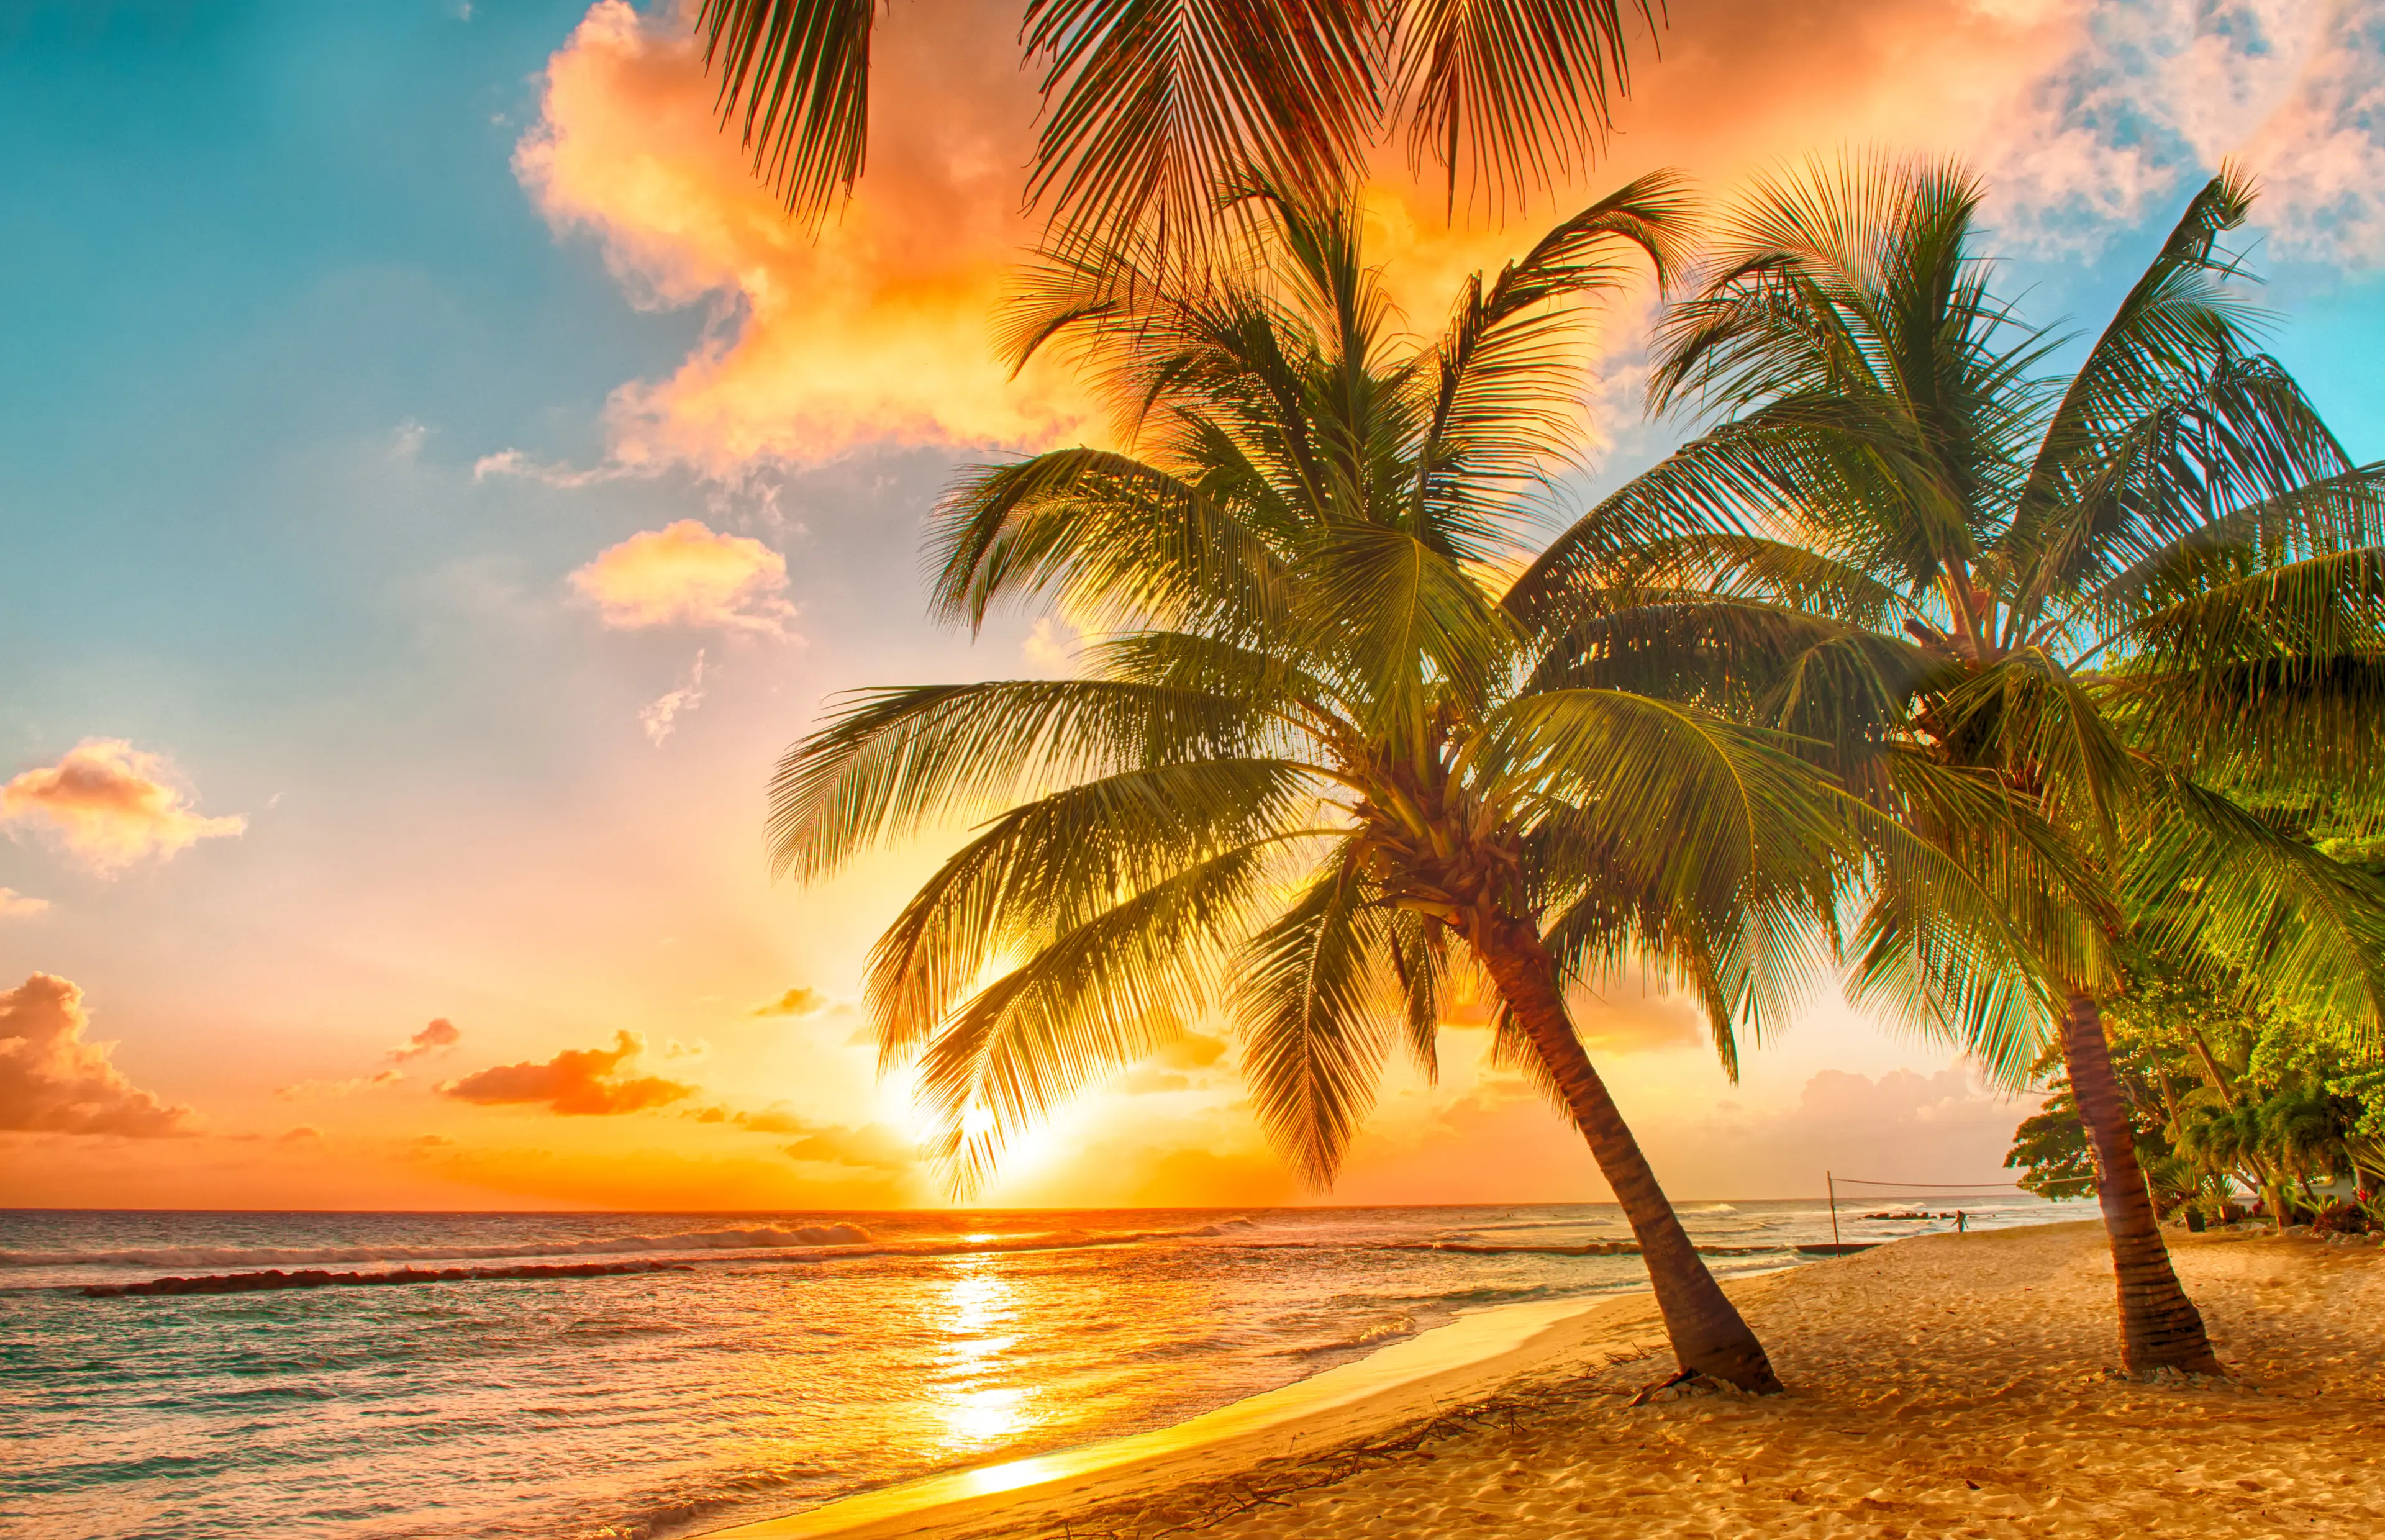 A Caribbean palm tree beach